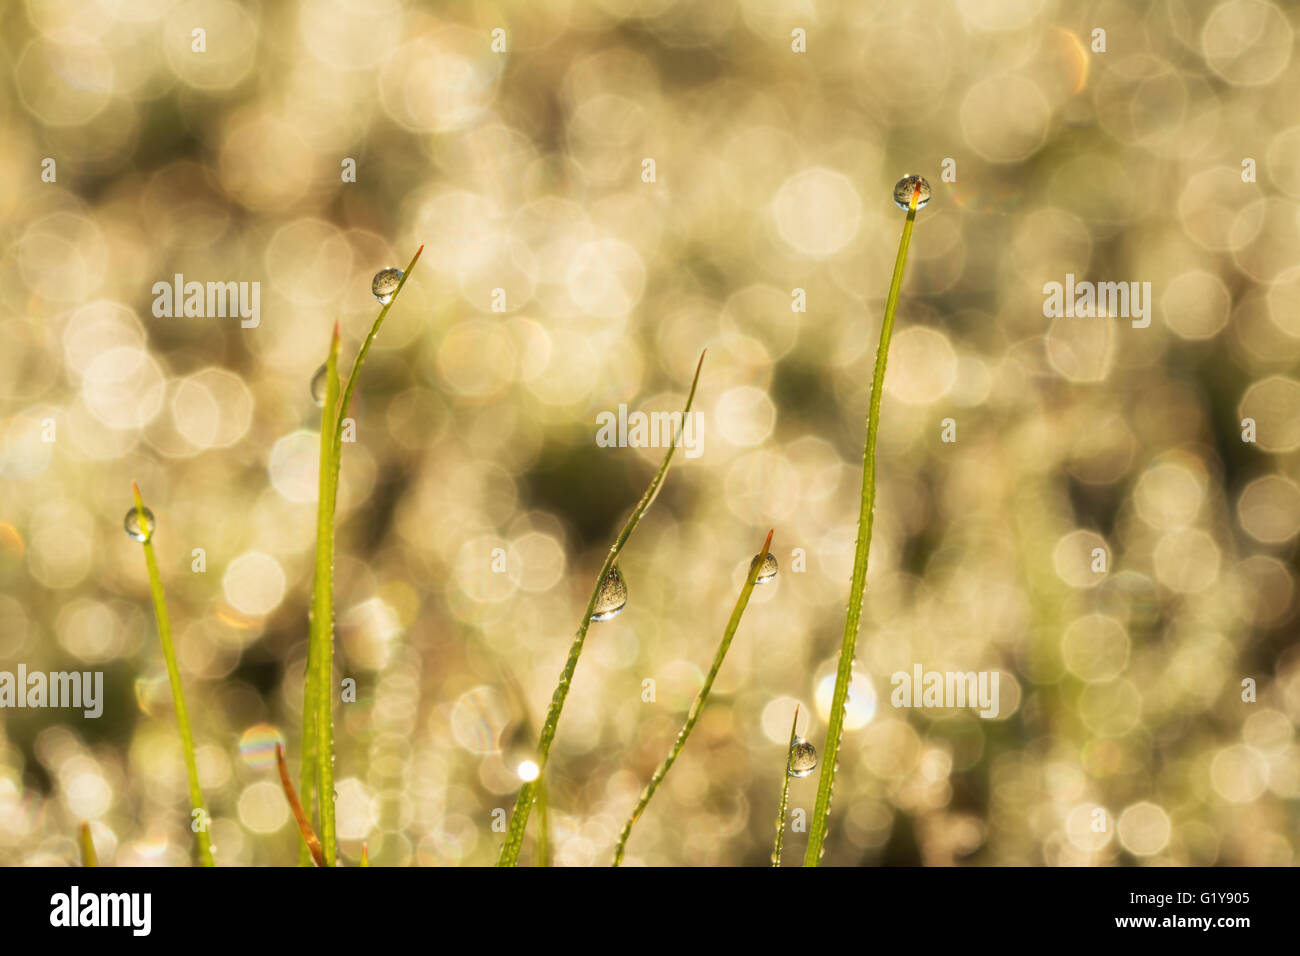 Amanecer en gotas de rocío sobre la hierba las hojas en un bokeh de fondo dewy Foto de stock